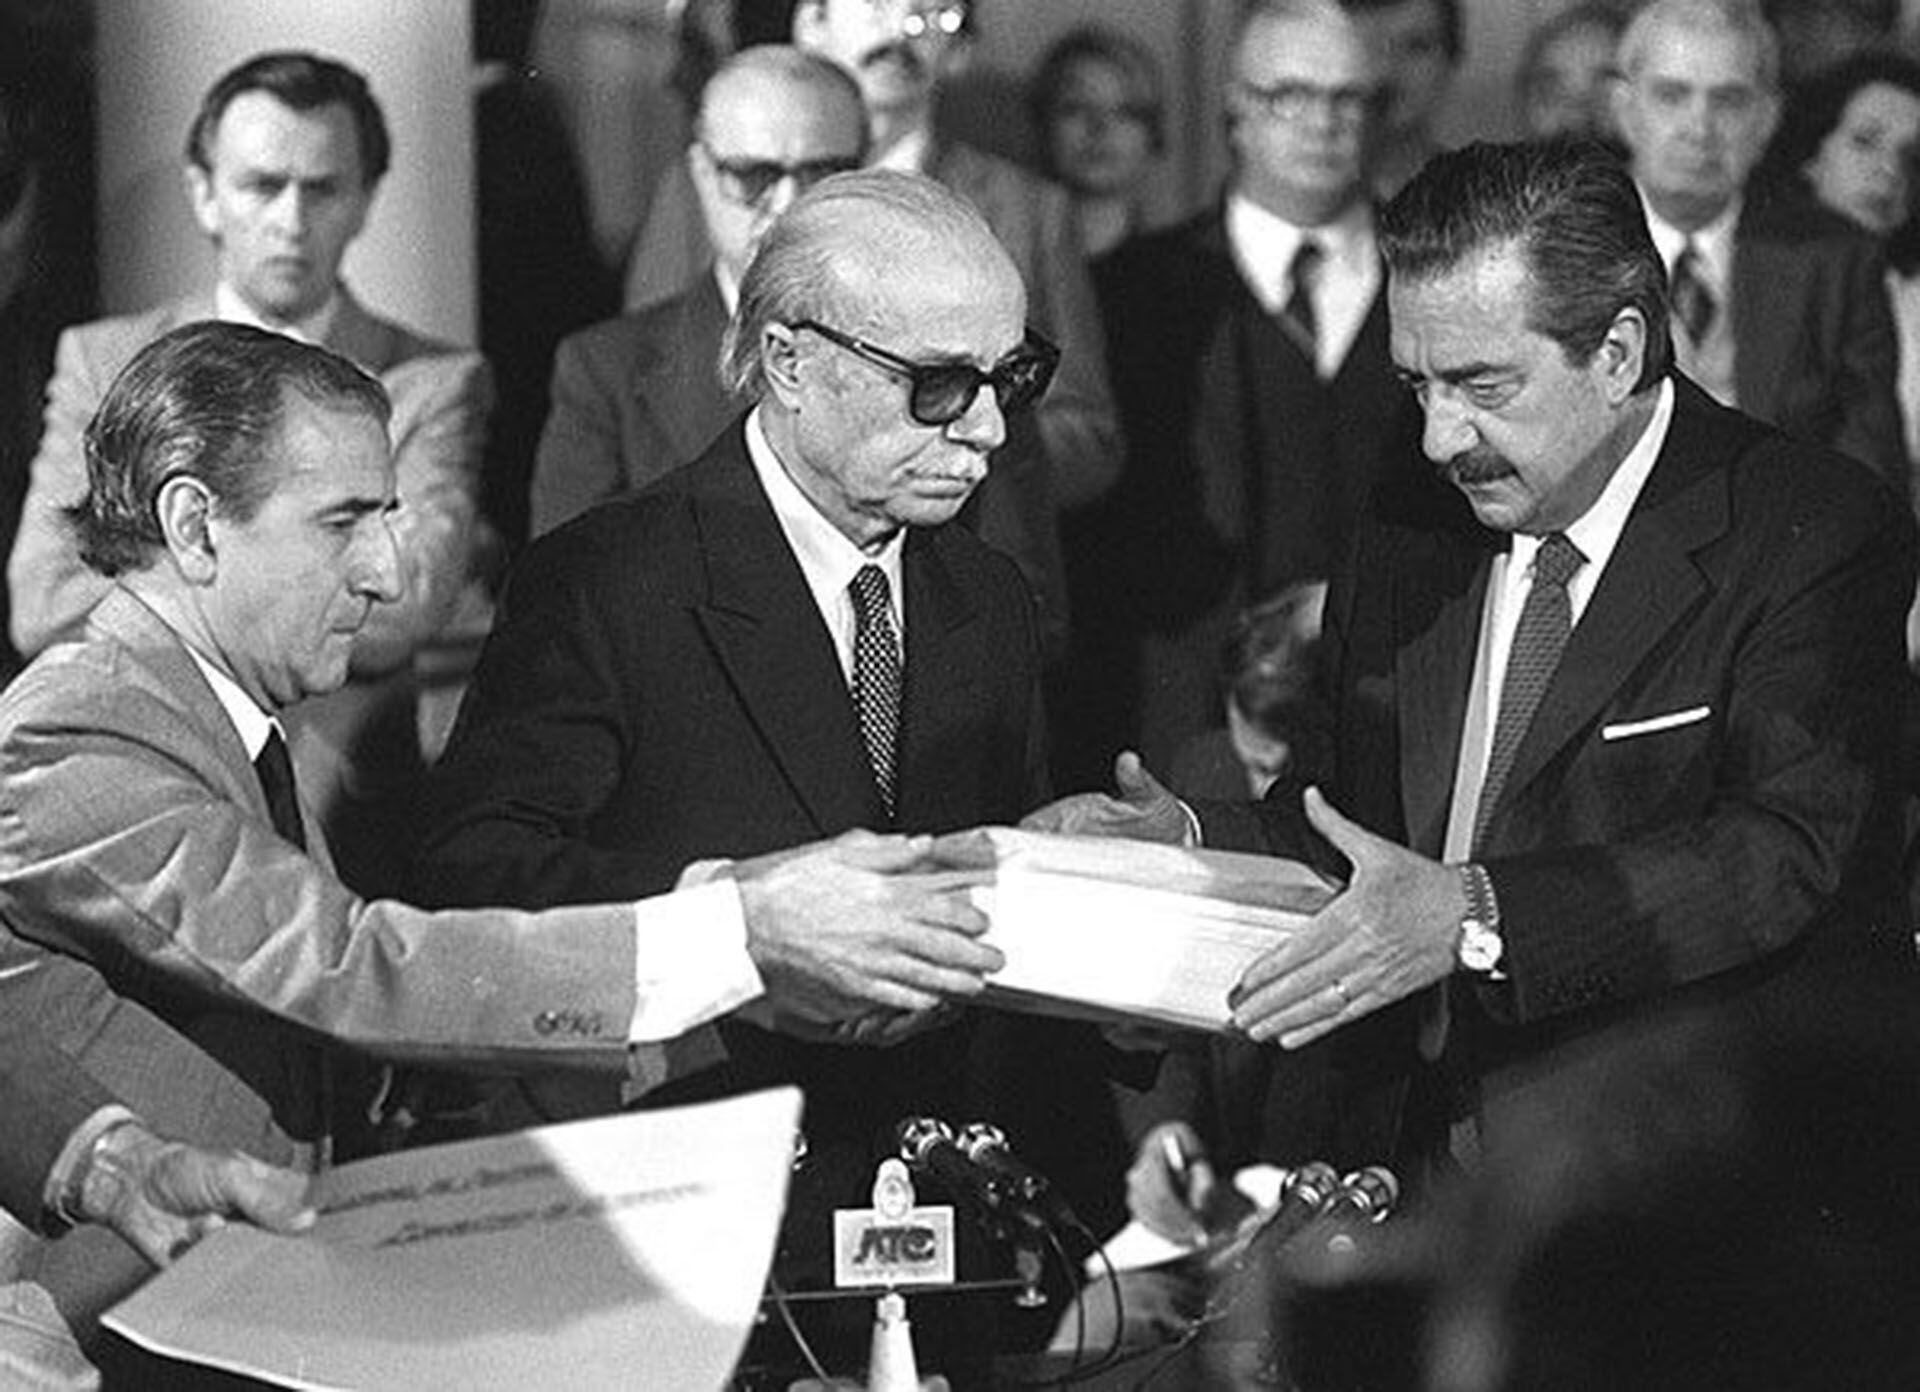 El 20 de septiembre de 1984, Ernesto Sabato, en carácter de presidente de la comisión, entregó el informe final al presidente Alfonsín y al Ministro del Interior Antonio Troccoli